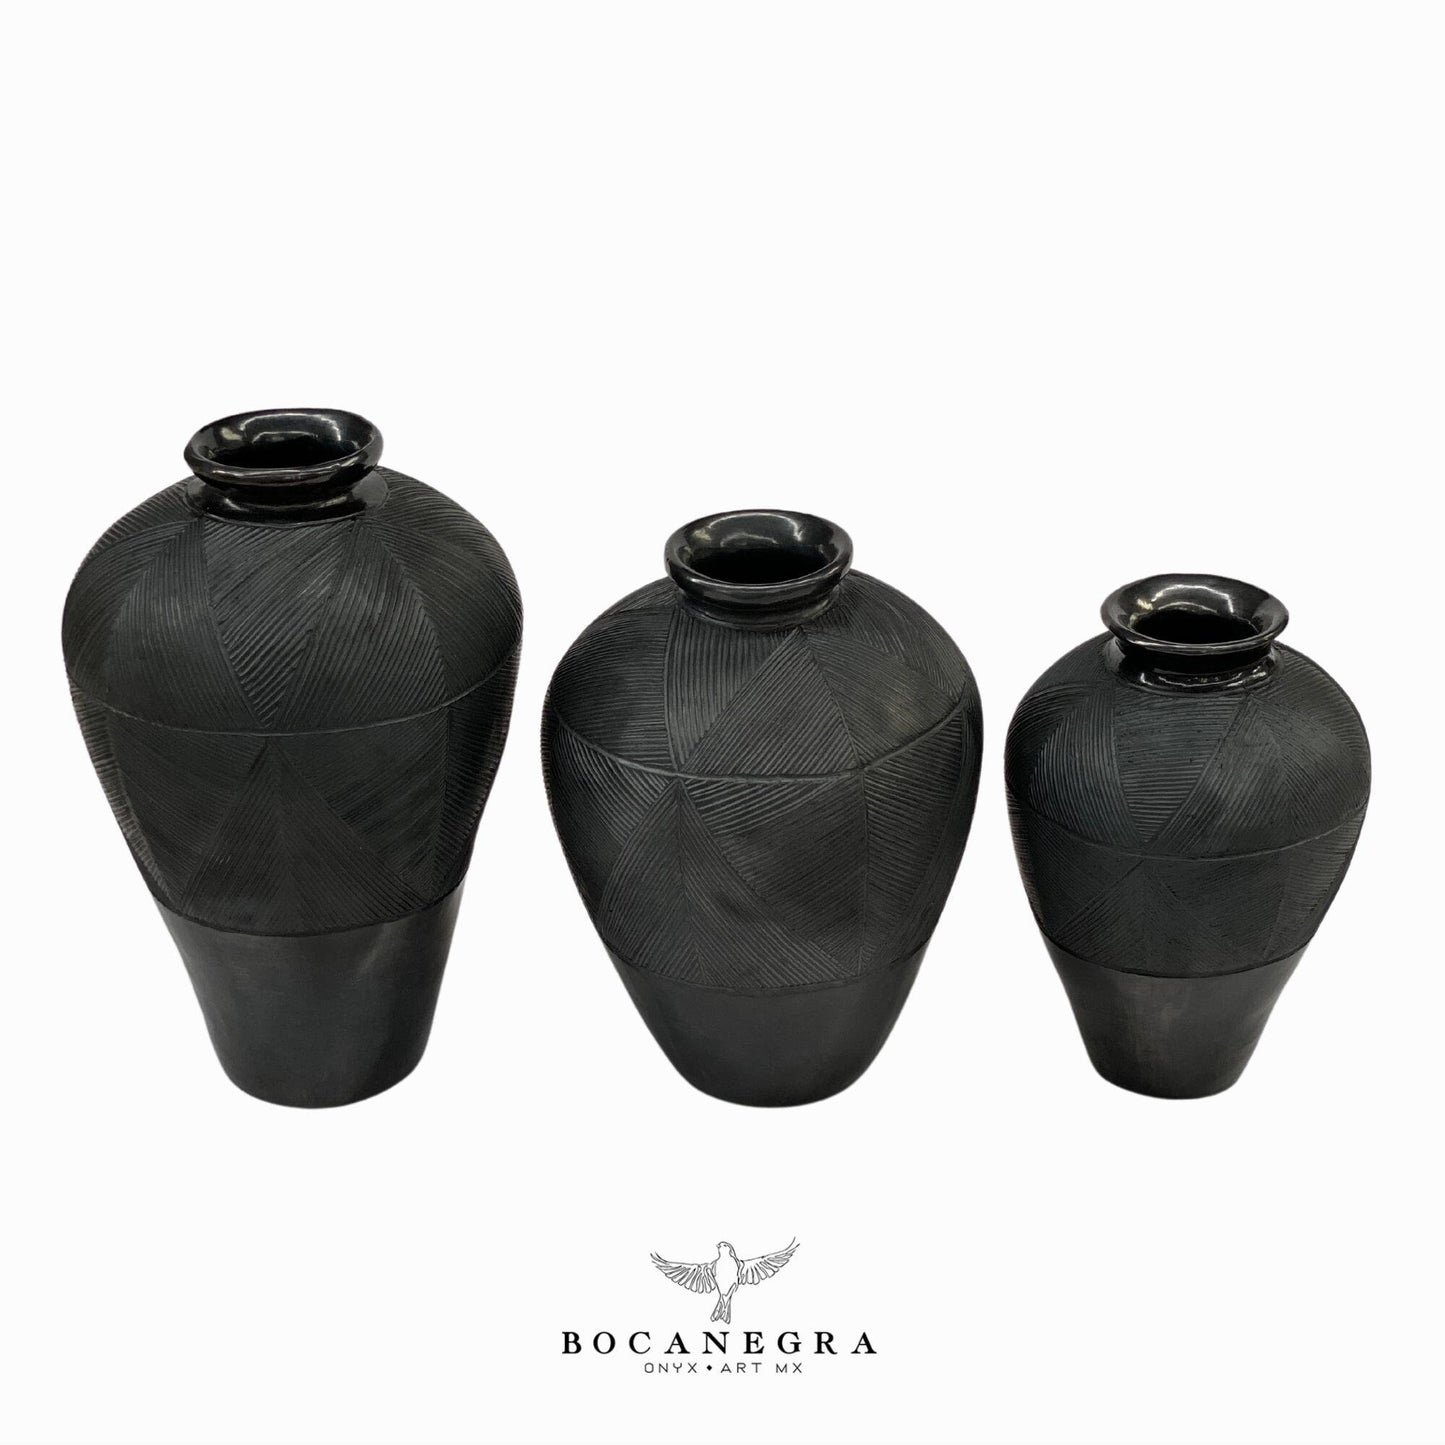 Black Clay Carved Vase (3 set) - Decorative jar - Mexican barro negro